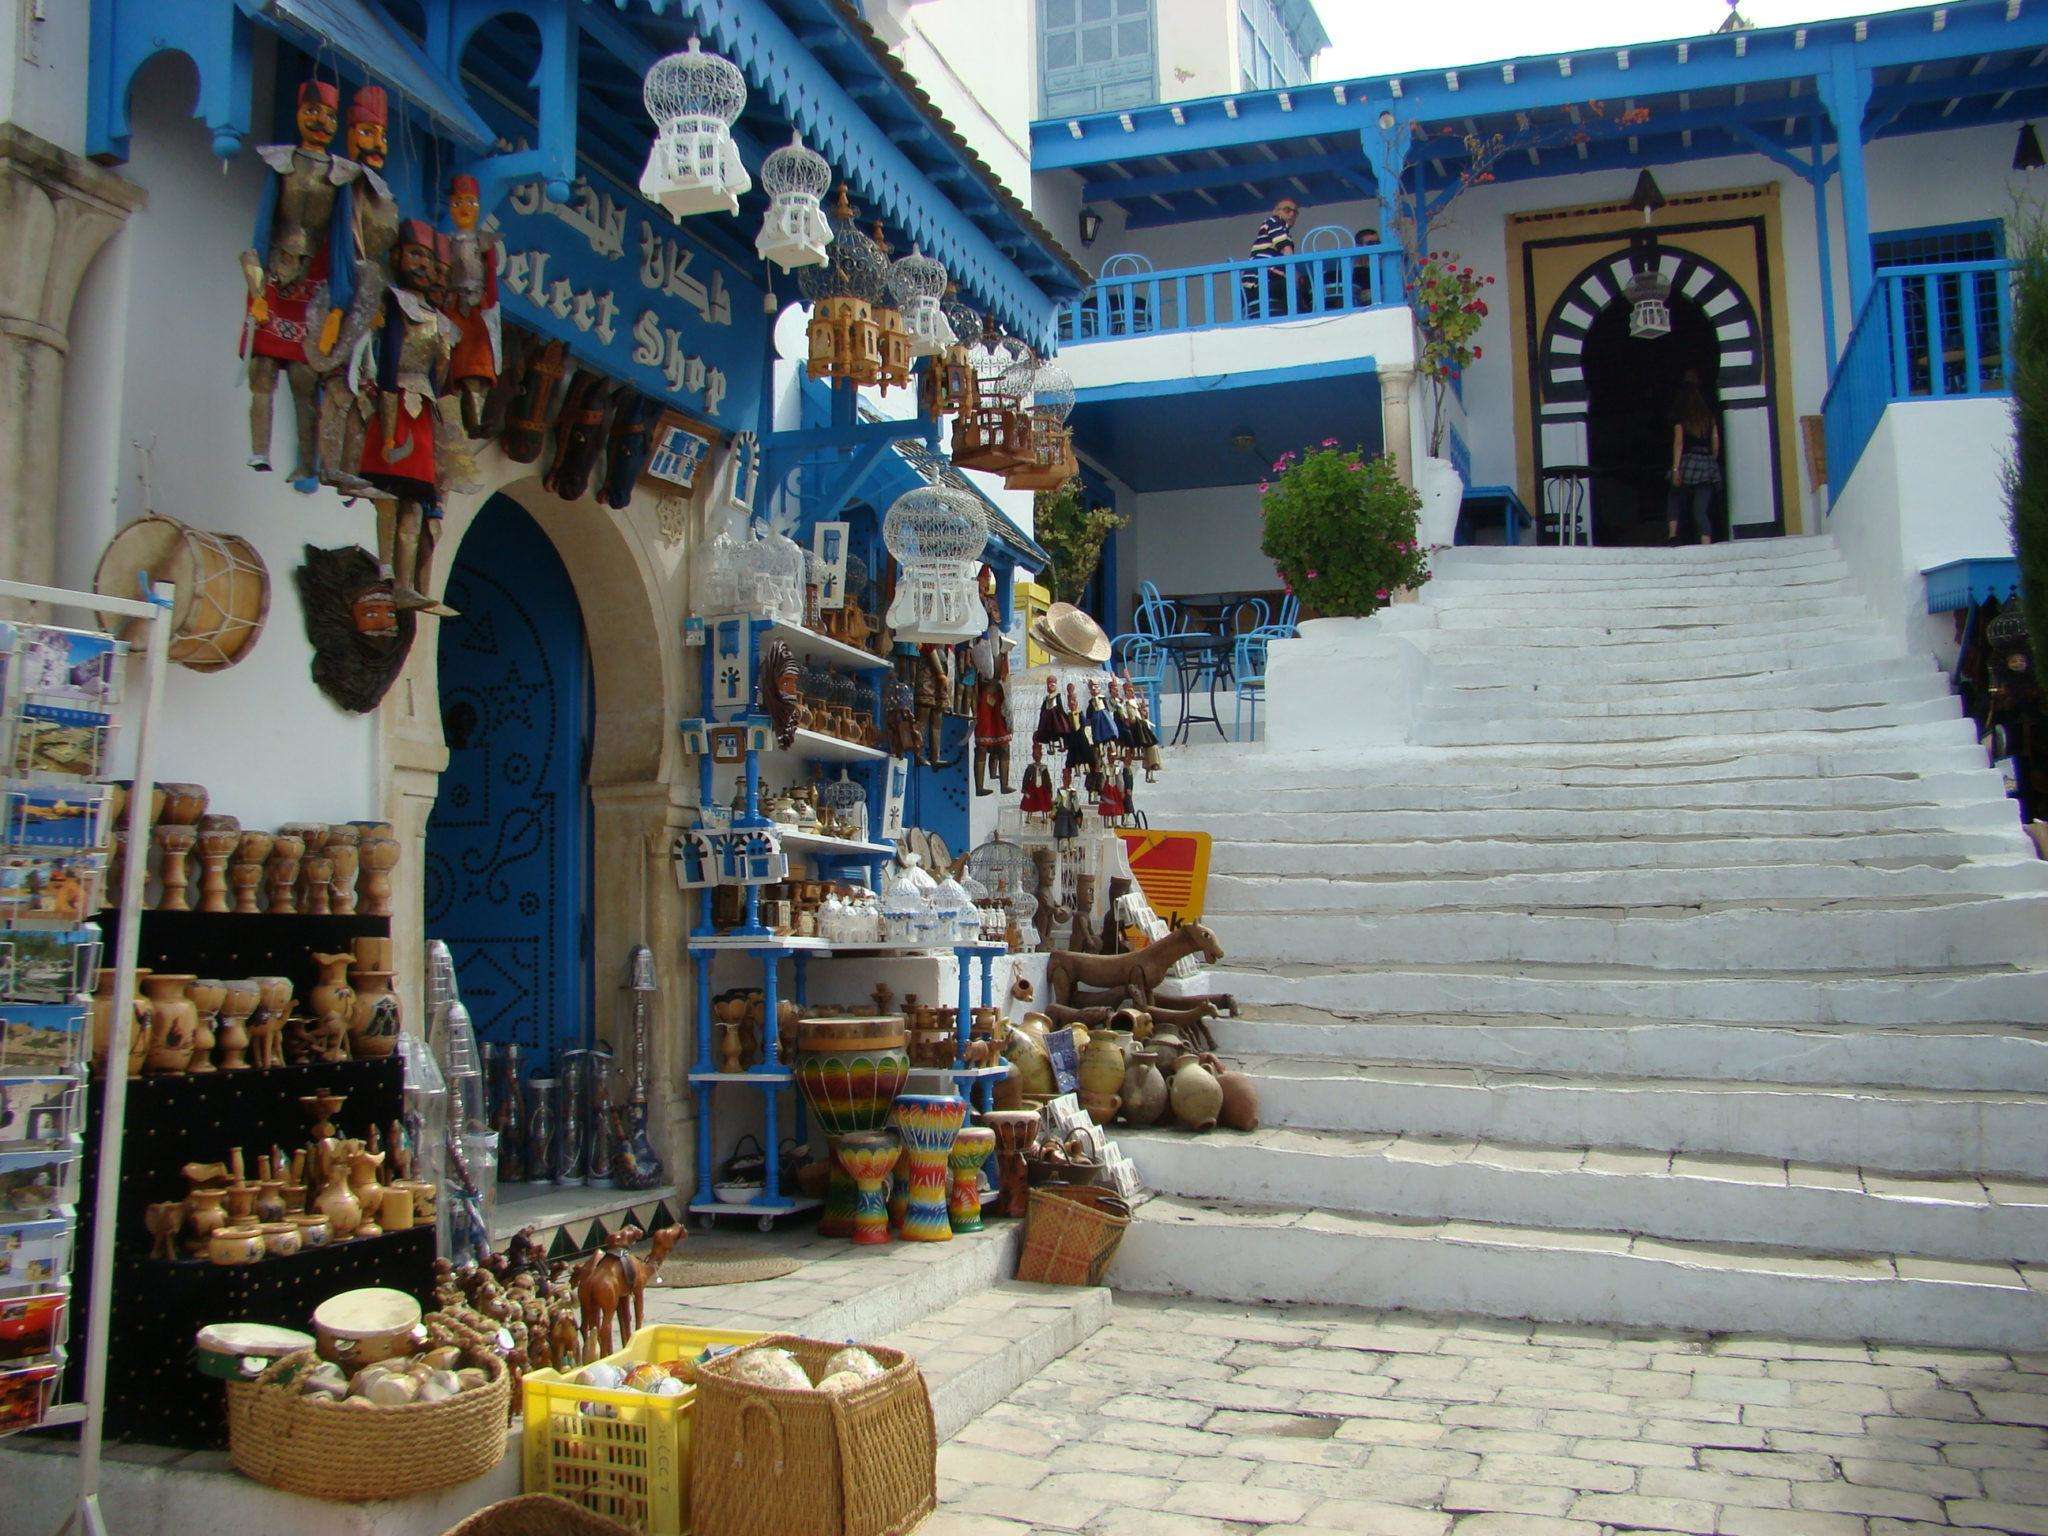 Travel: Tunisia पर्यटन सीजन को बचाने के लिए कोविद -19 उपायों को आसान बनाता है